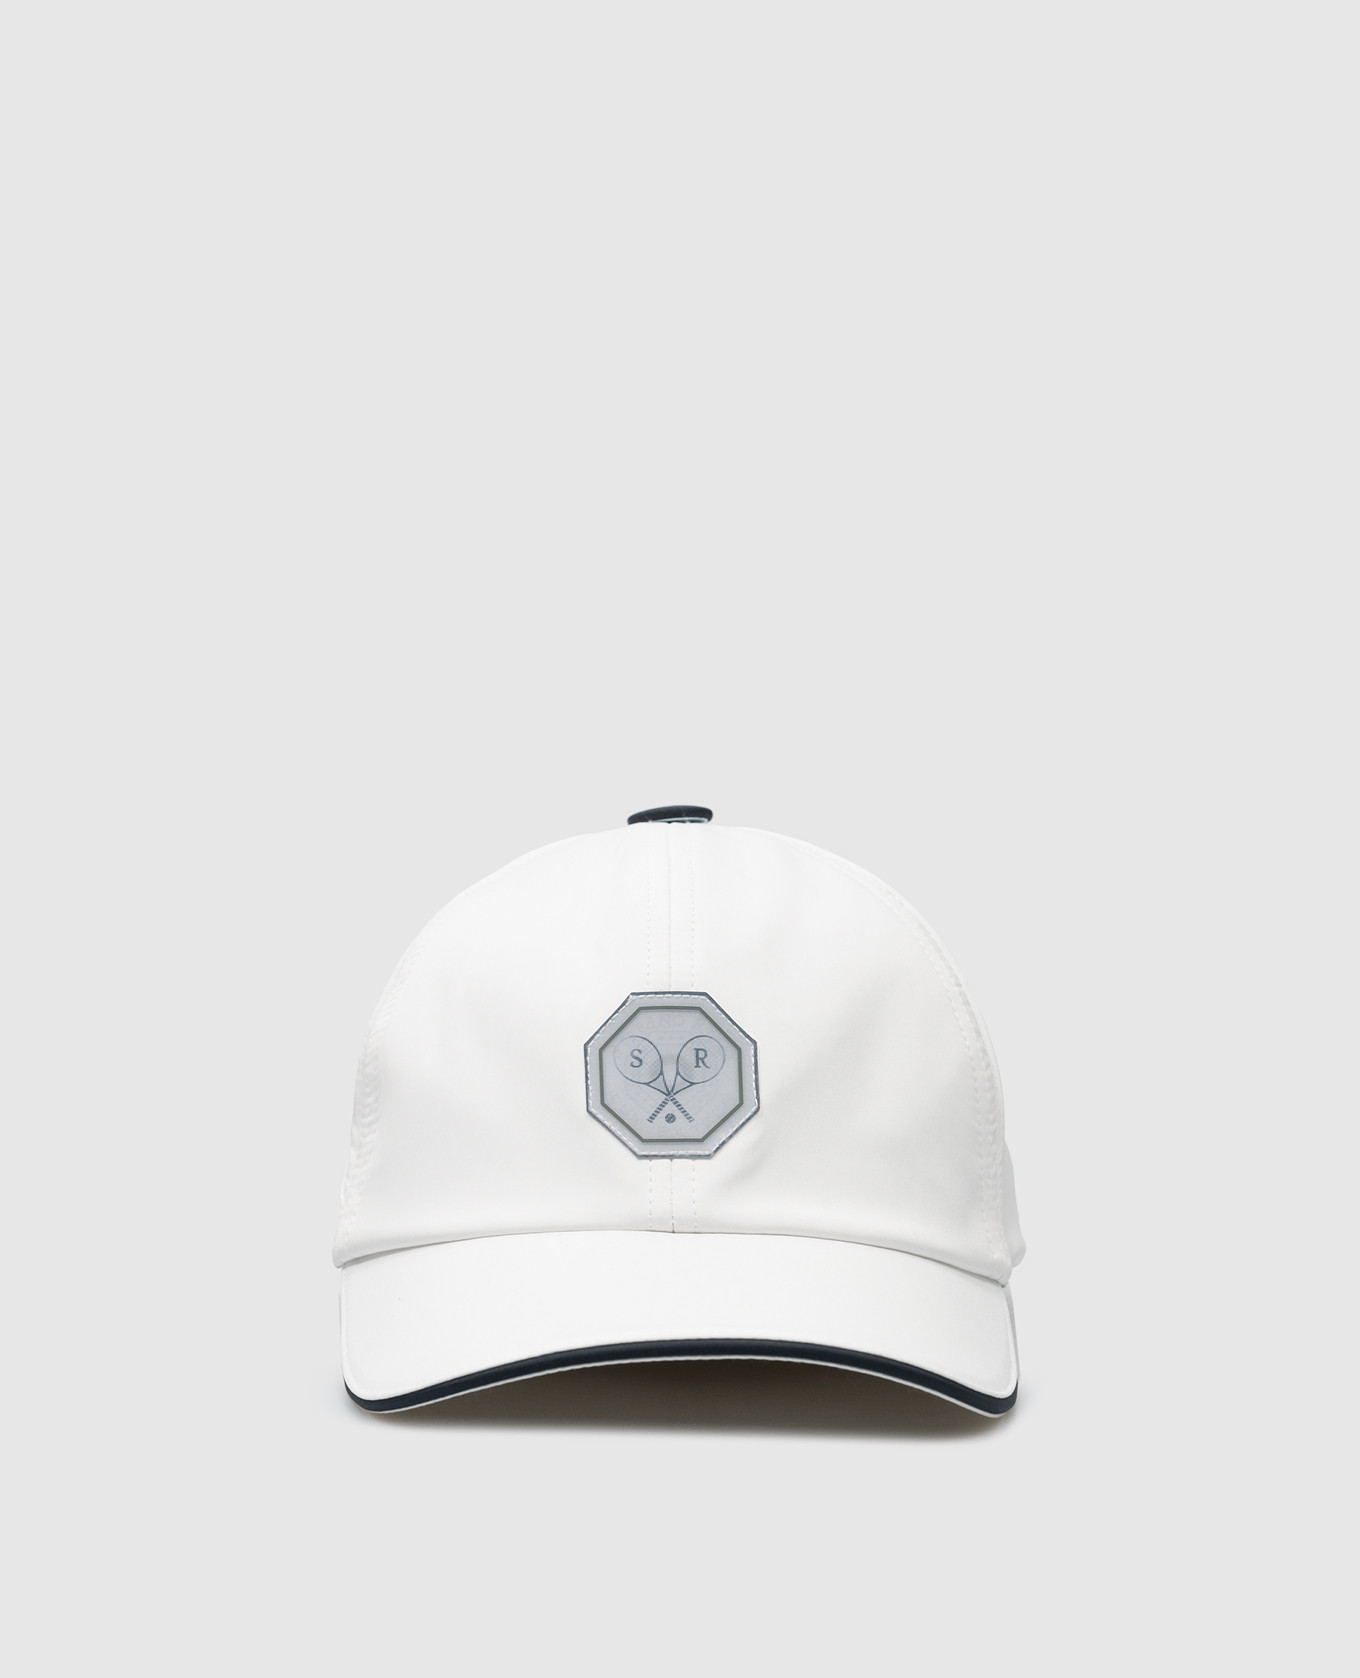 Белая кепка с голографическим патчем логотипа